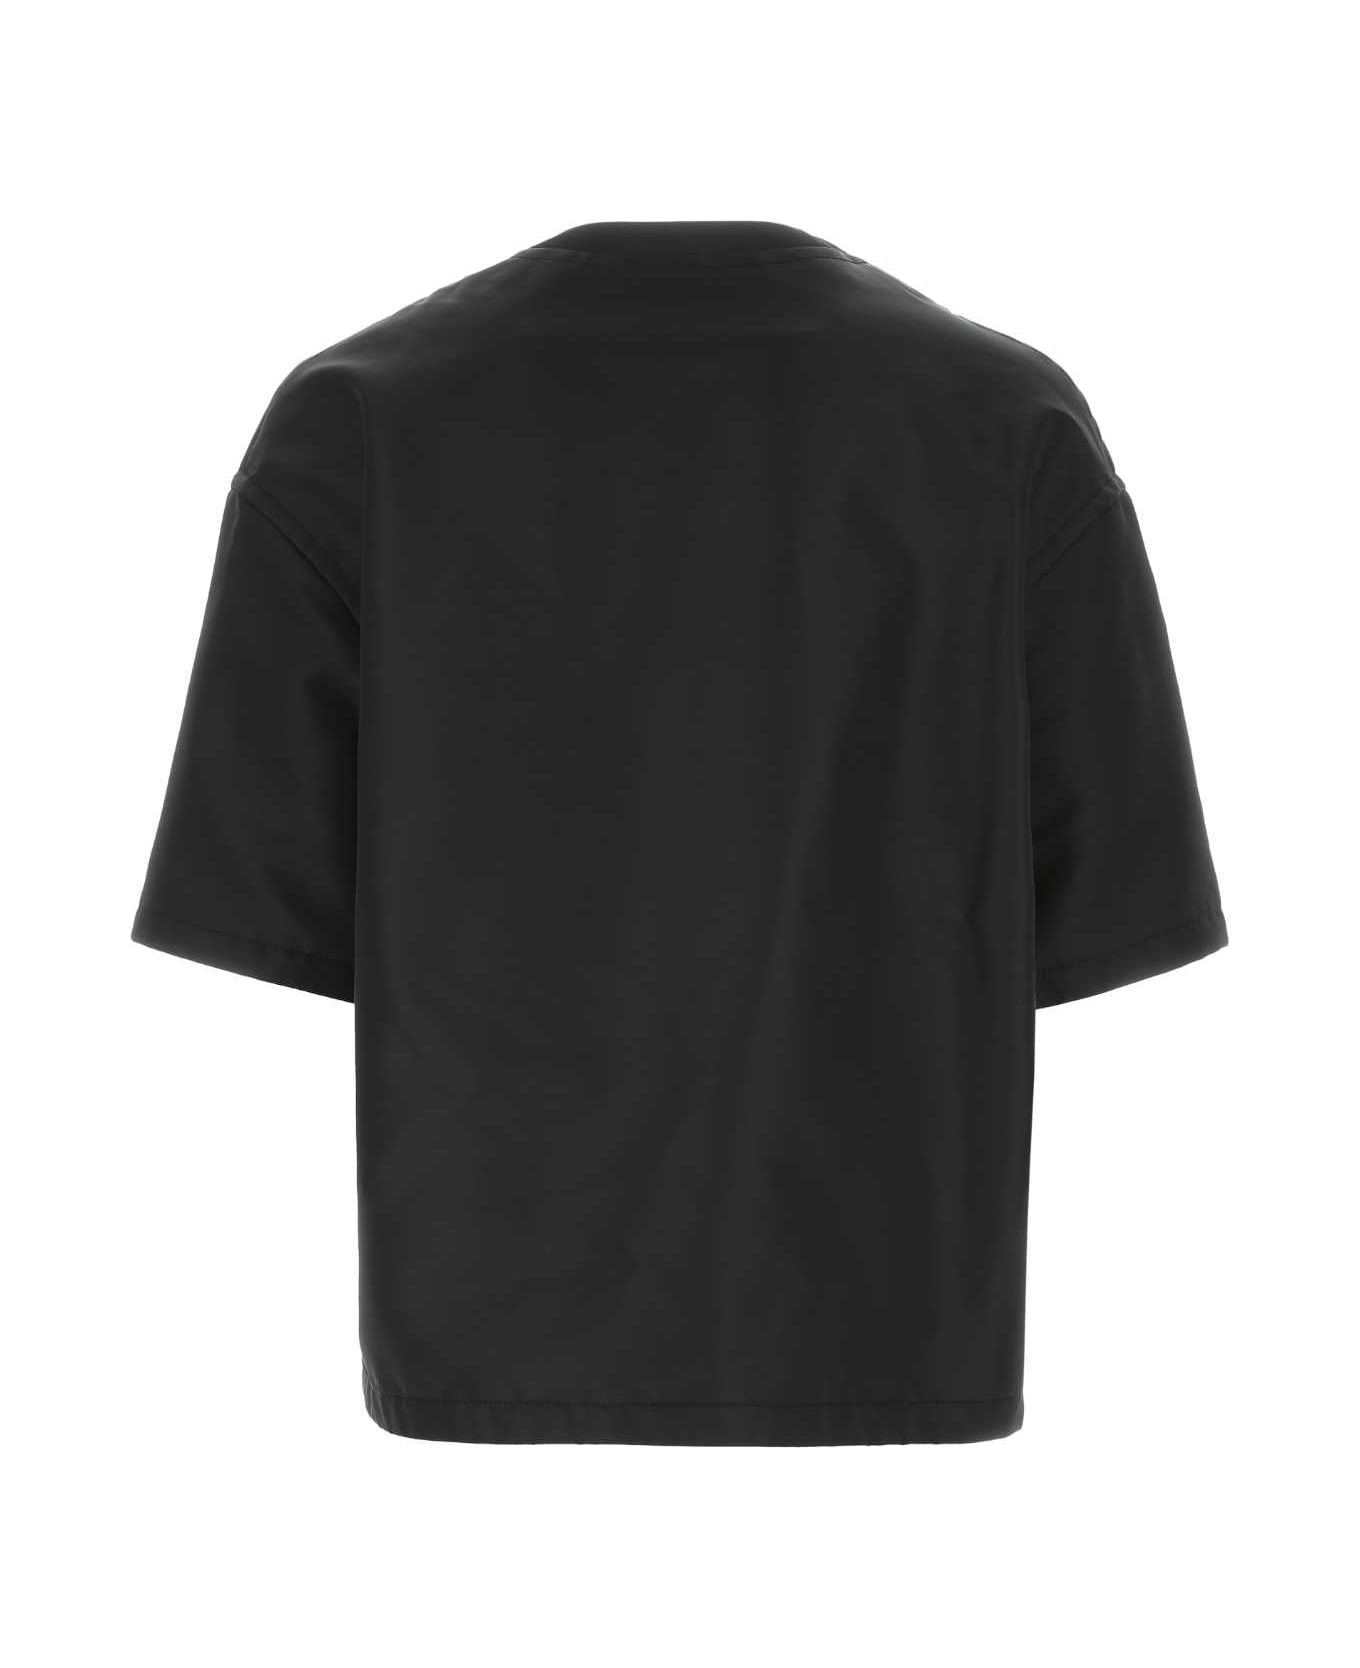 Valentino Garavani Black Nylon Oversize Shirt - 0NO シャツ